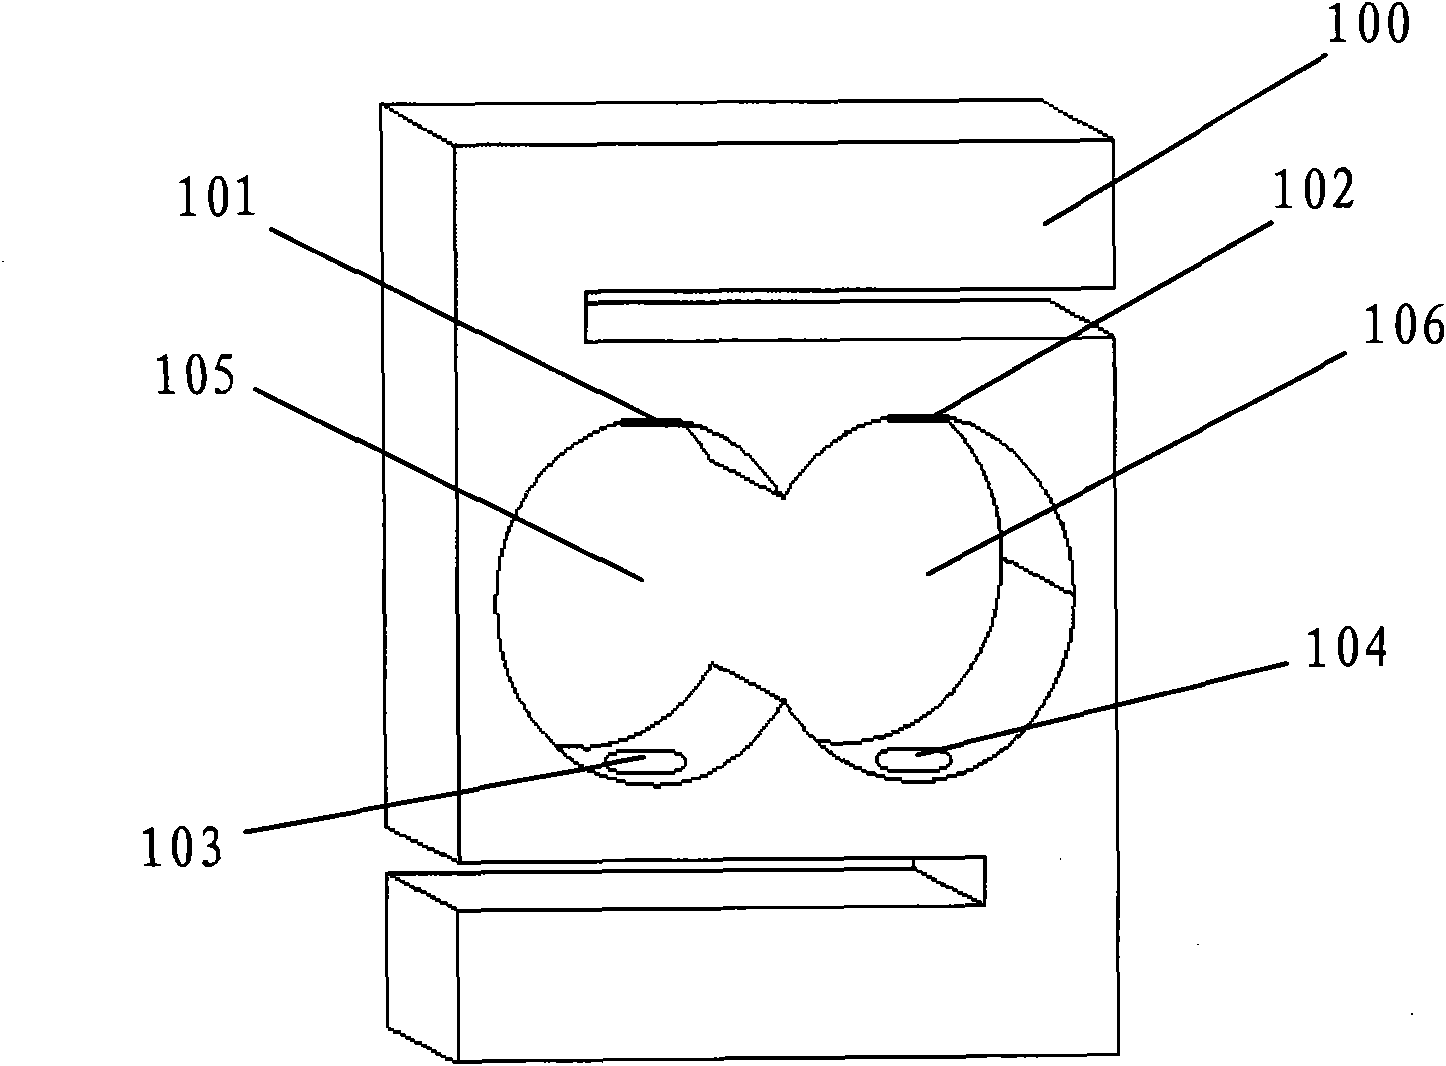 Method for determining paste position of strain gauge of sensor